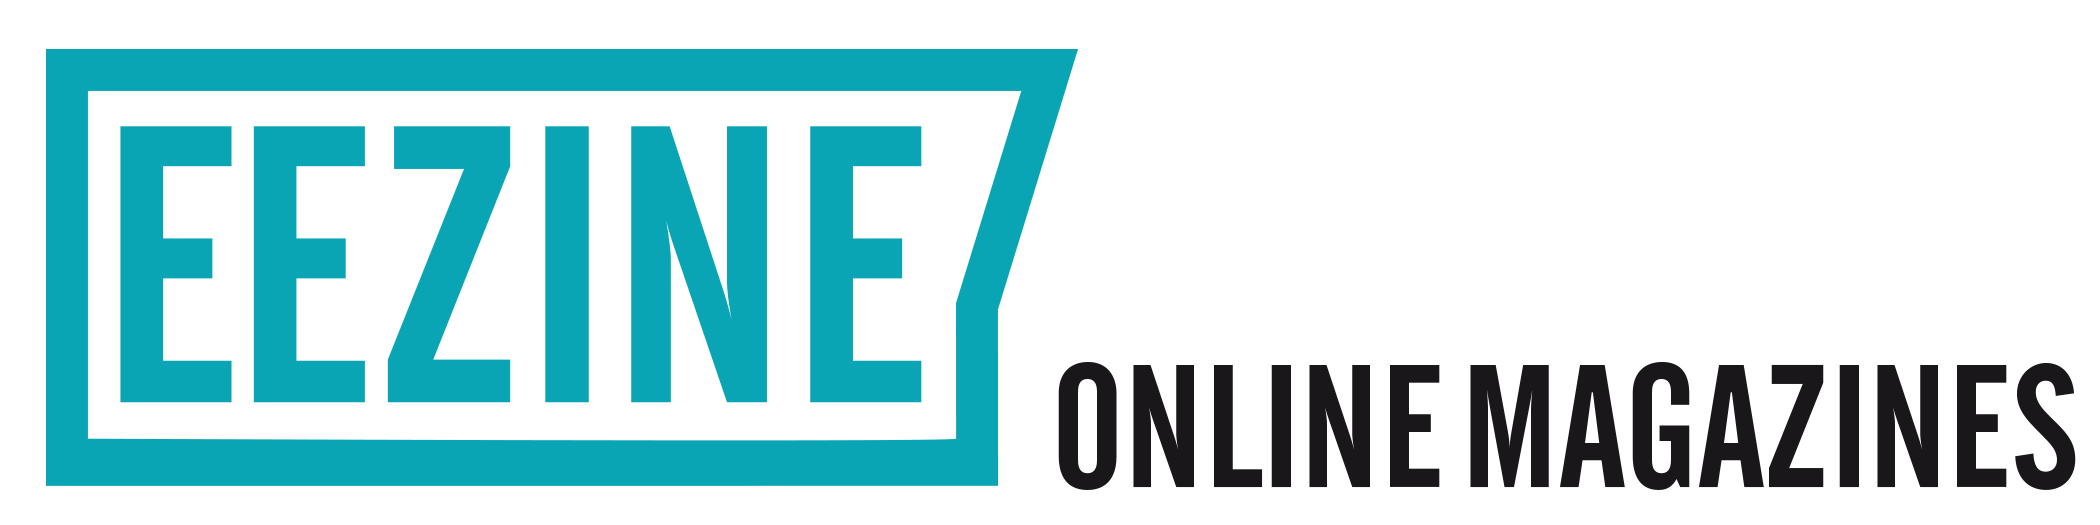 Eezine - Online Magazines